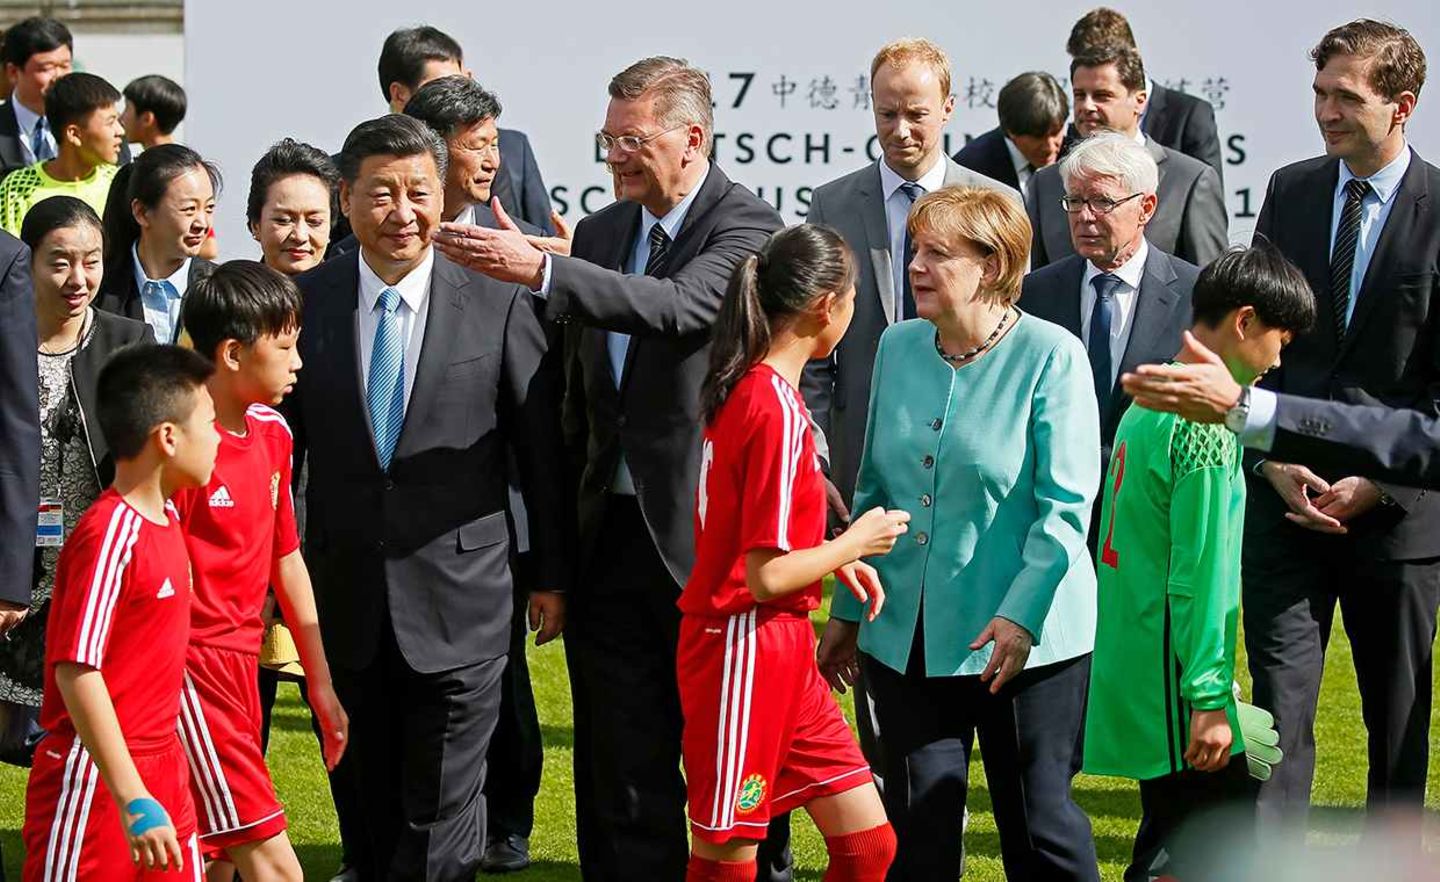 Chinas Präsident Xi Jinping 2017 bei einem Fußballtermin mit Kanzlerin Angela Merkel und dem damaligen DFB-Präsidenten Reinhard Grindel in Berlin: Beide Regierungen haben den Start der Fußballkooperation flankiert